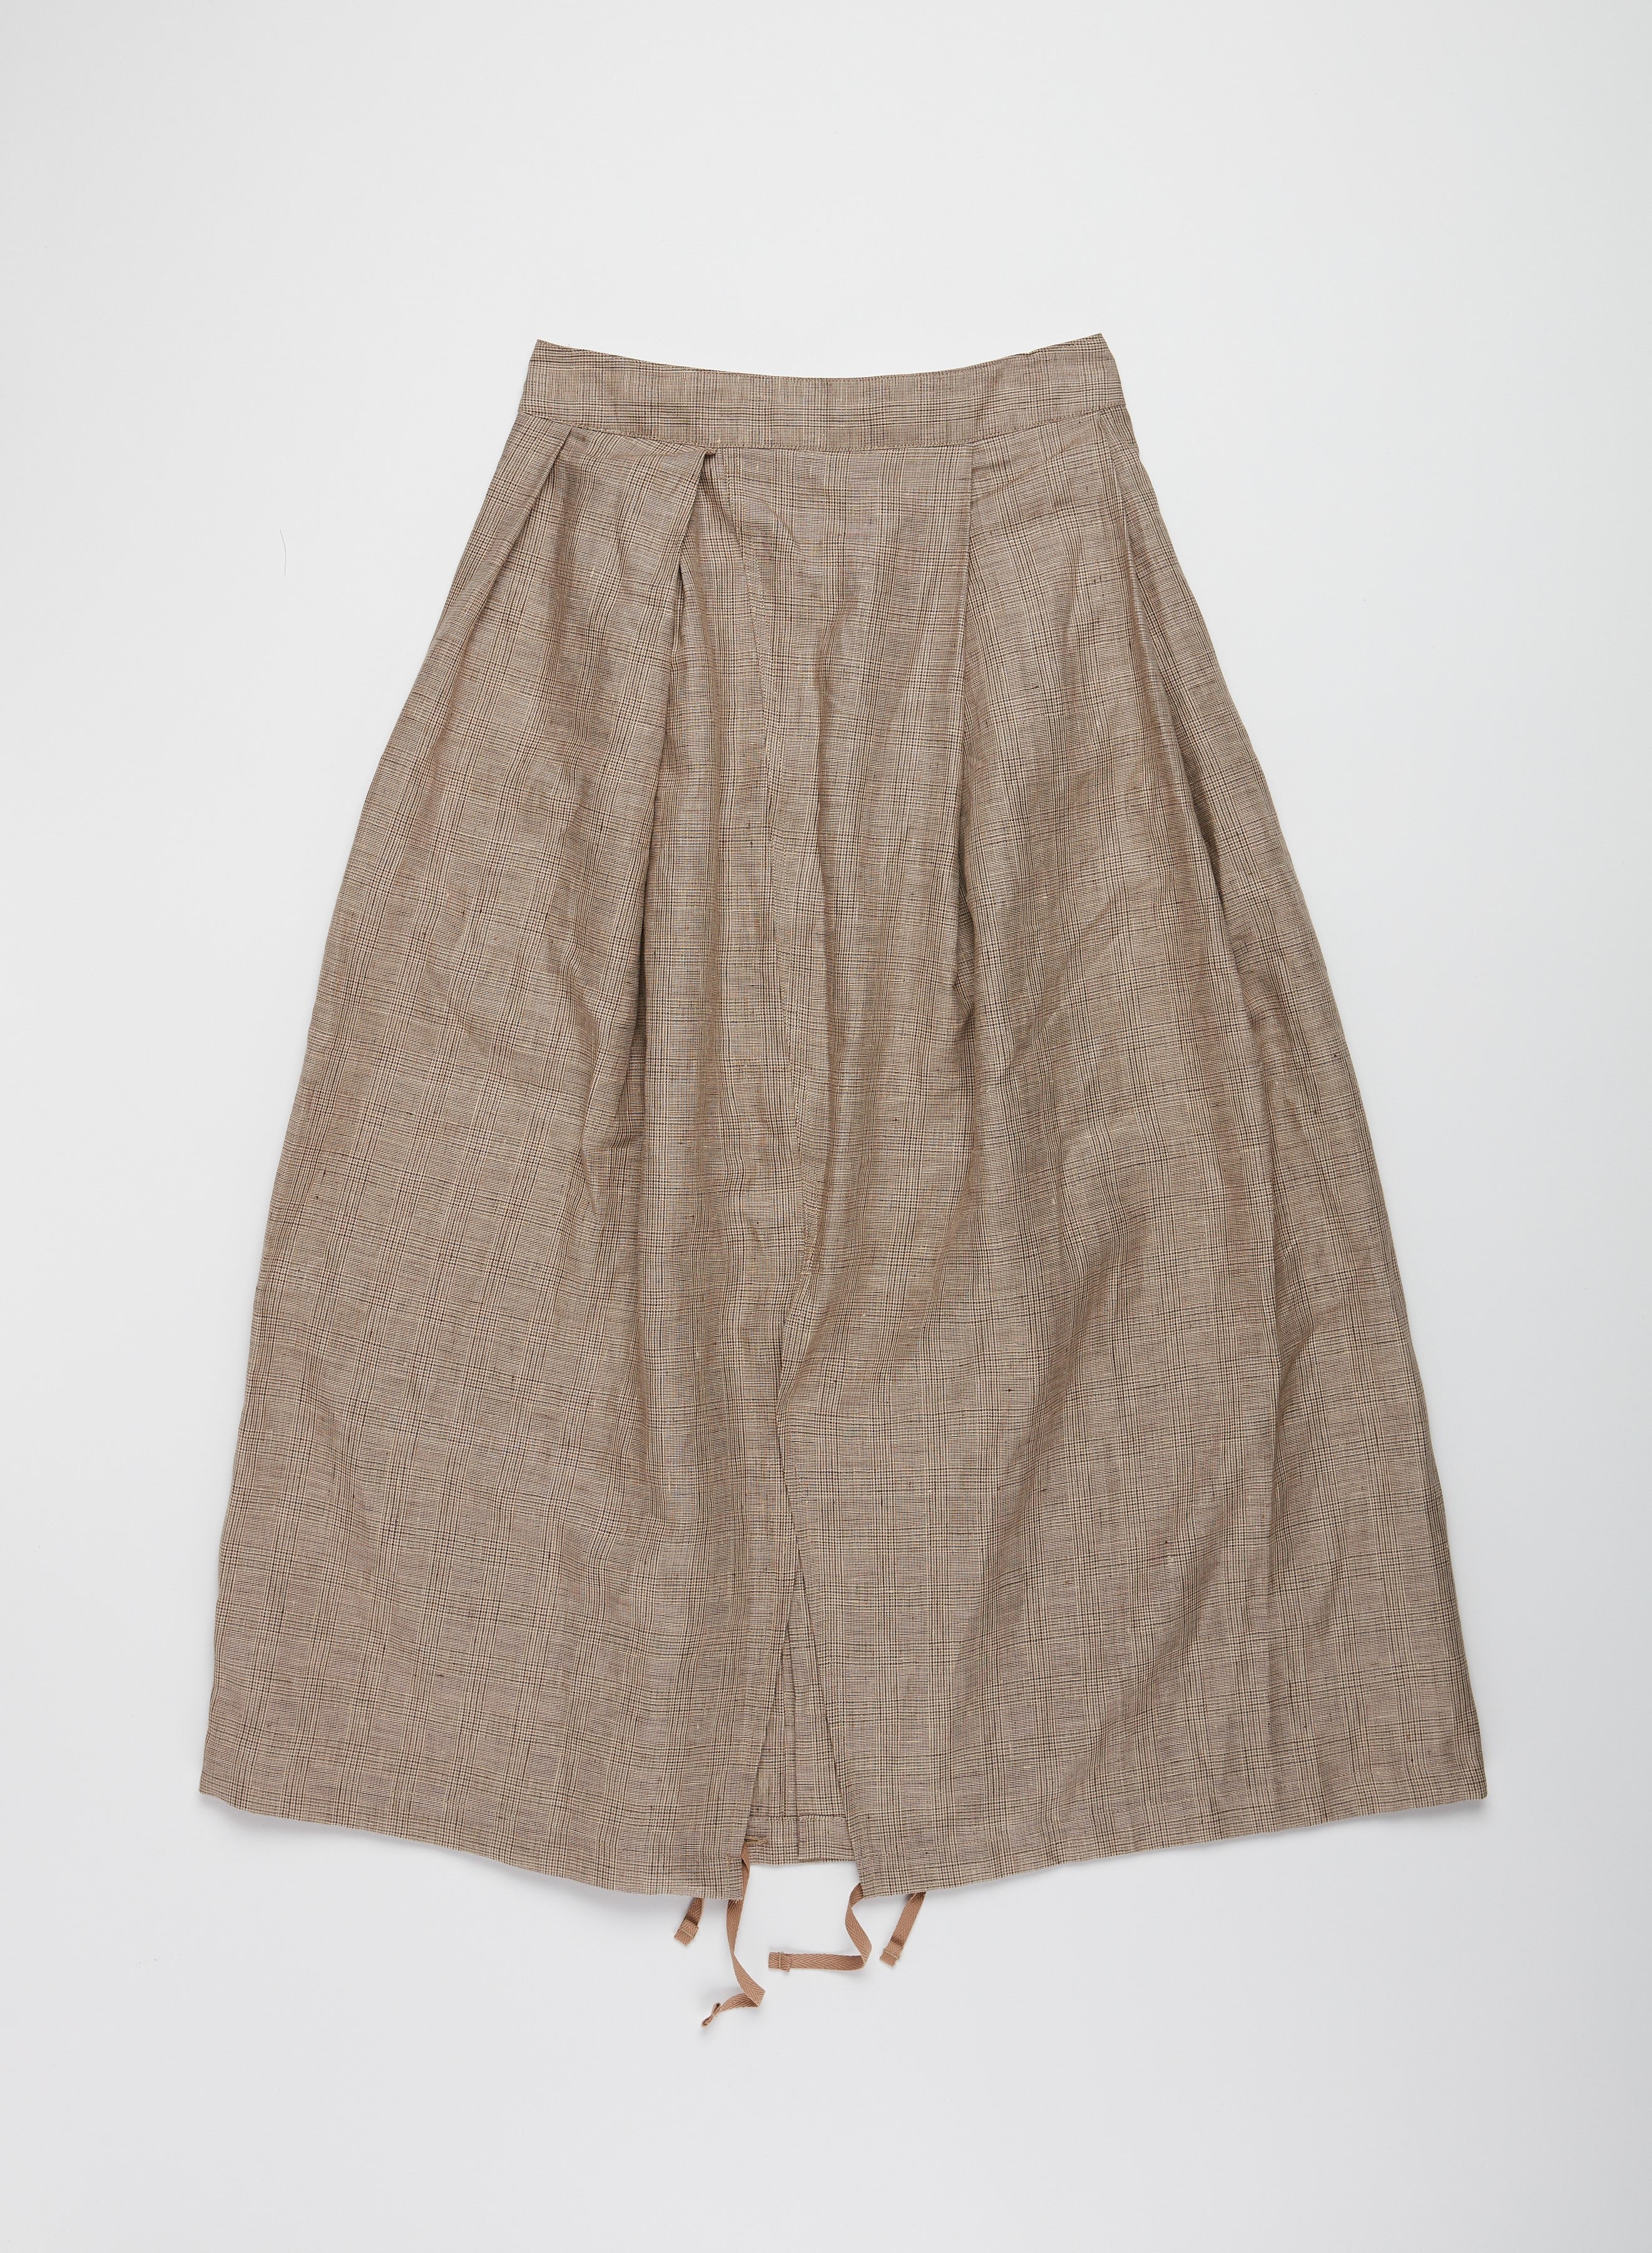 Tuck Skirt - Beige Linen Glen Plaid